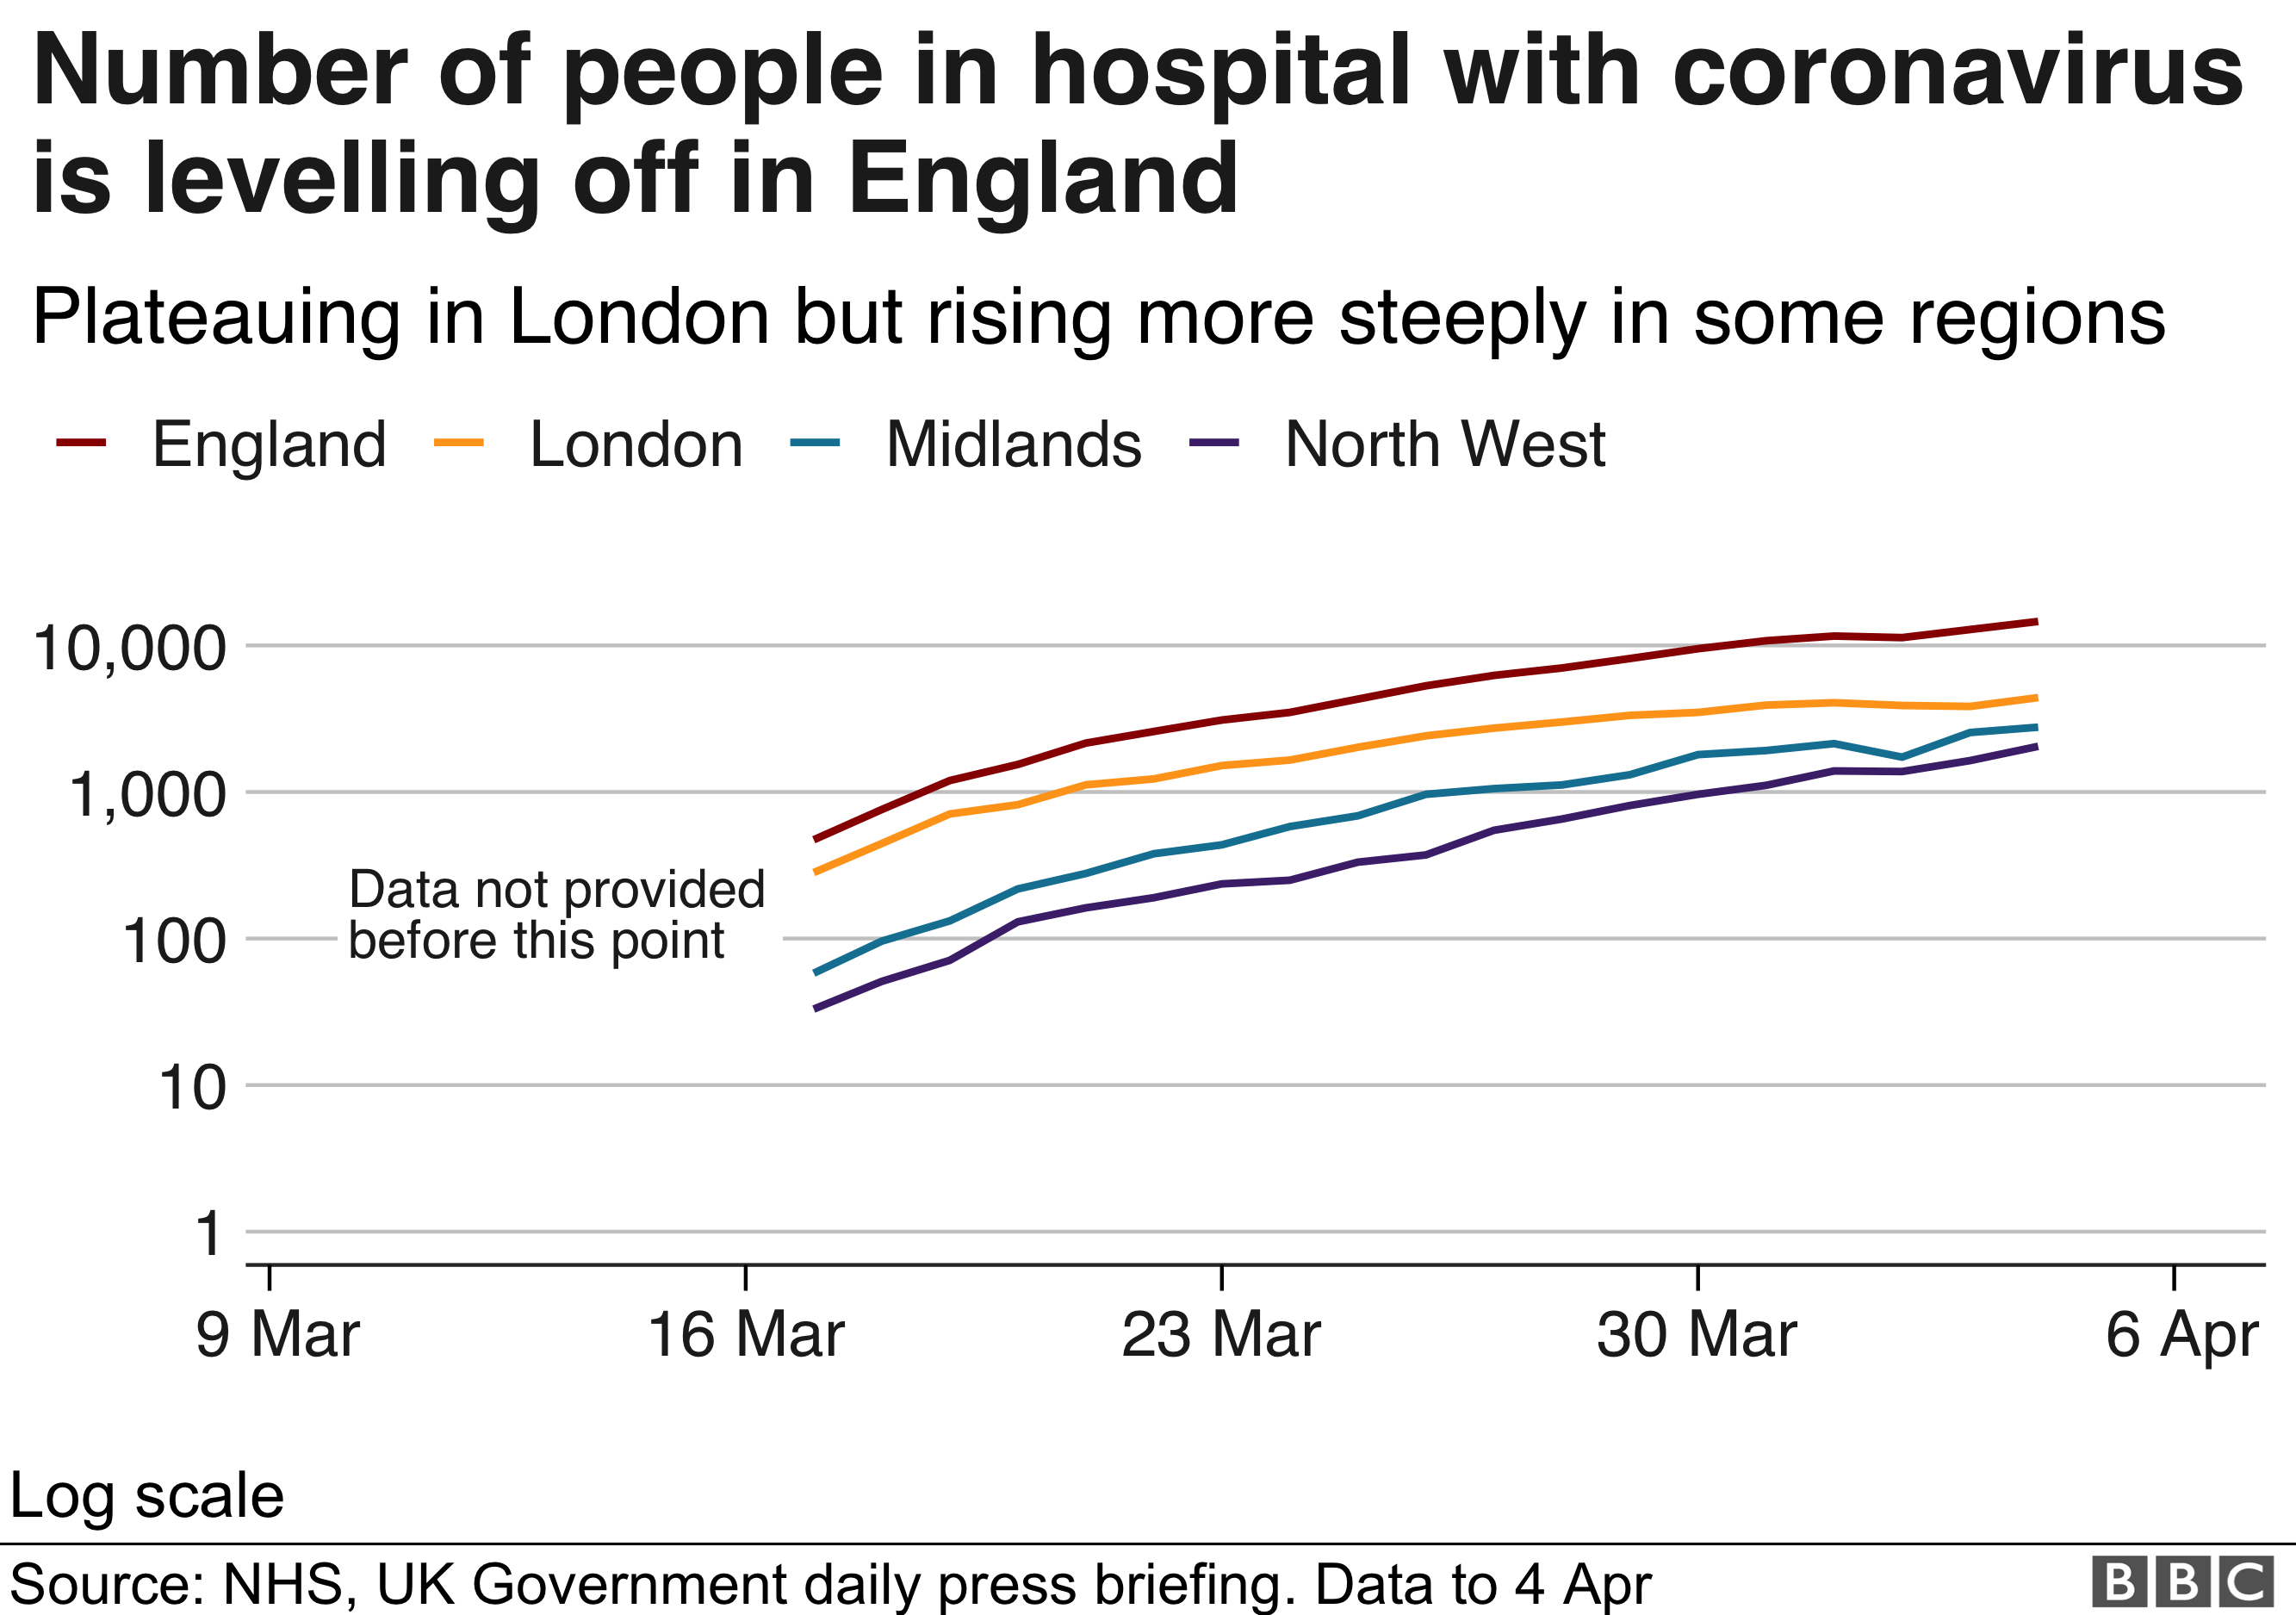 Количество людей, находящихся в больнице с коронавирусом, снизилось в Англии и стабилизировалось в Лондоне